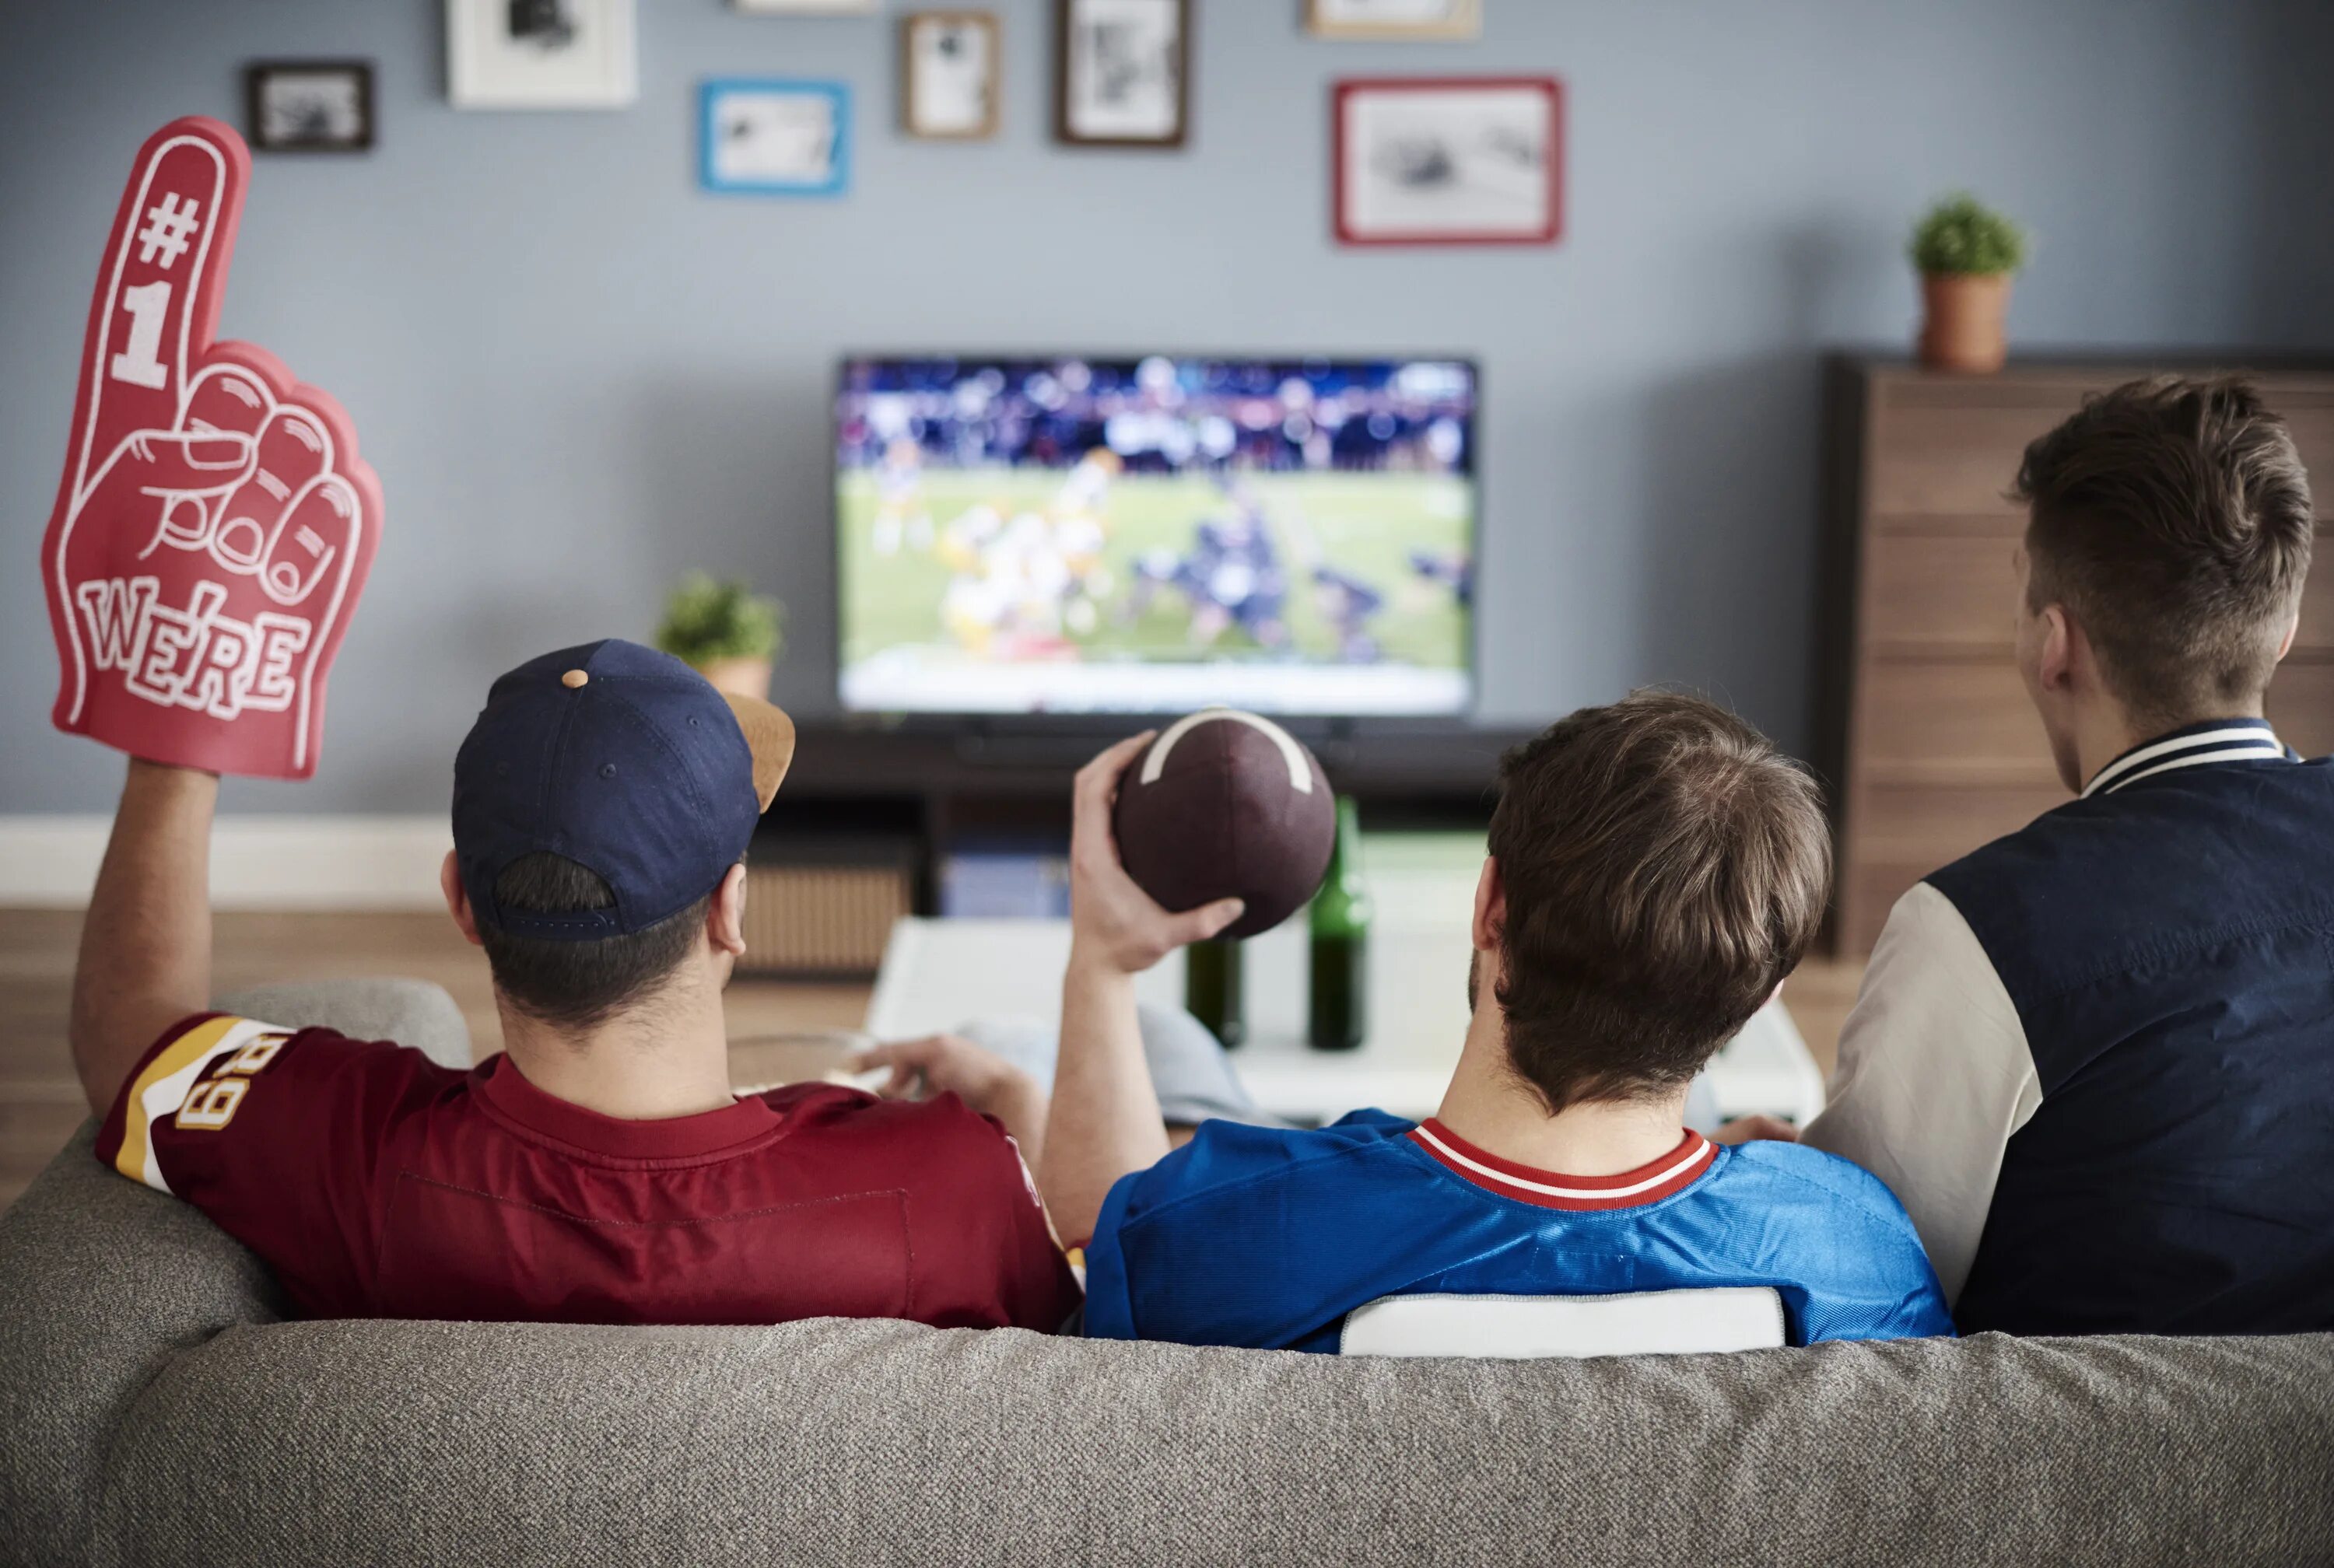 Спорт по телевизору. Банки перед телевизором. Пикник перед телевизором. Мужчина смотрит матч по телевизору.